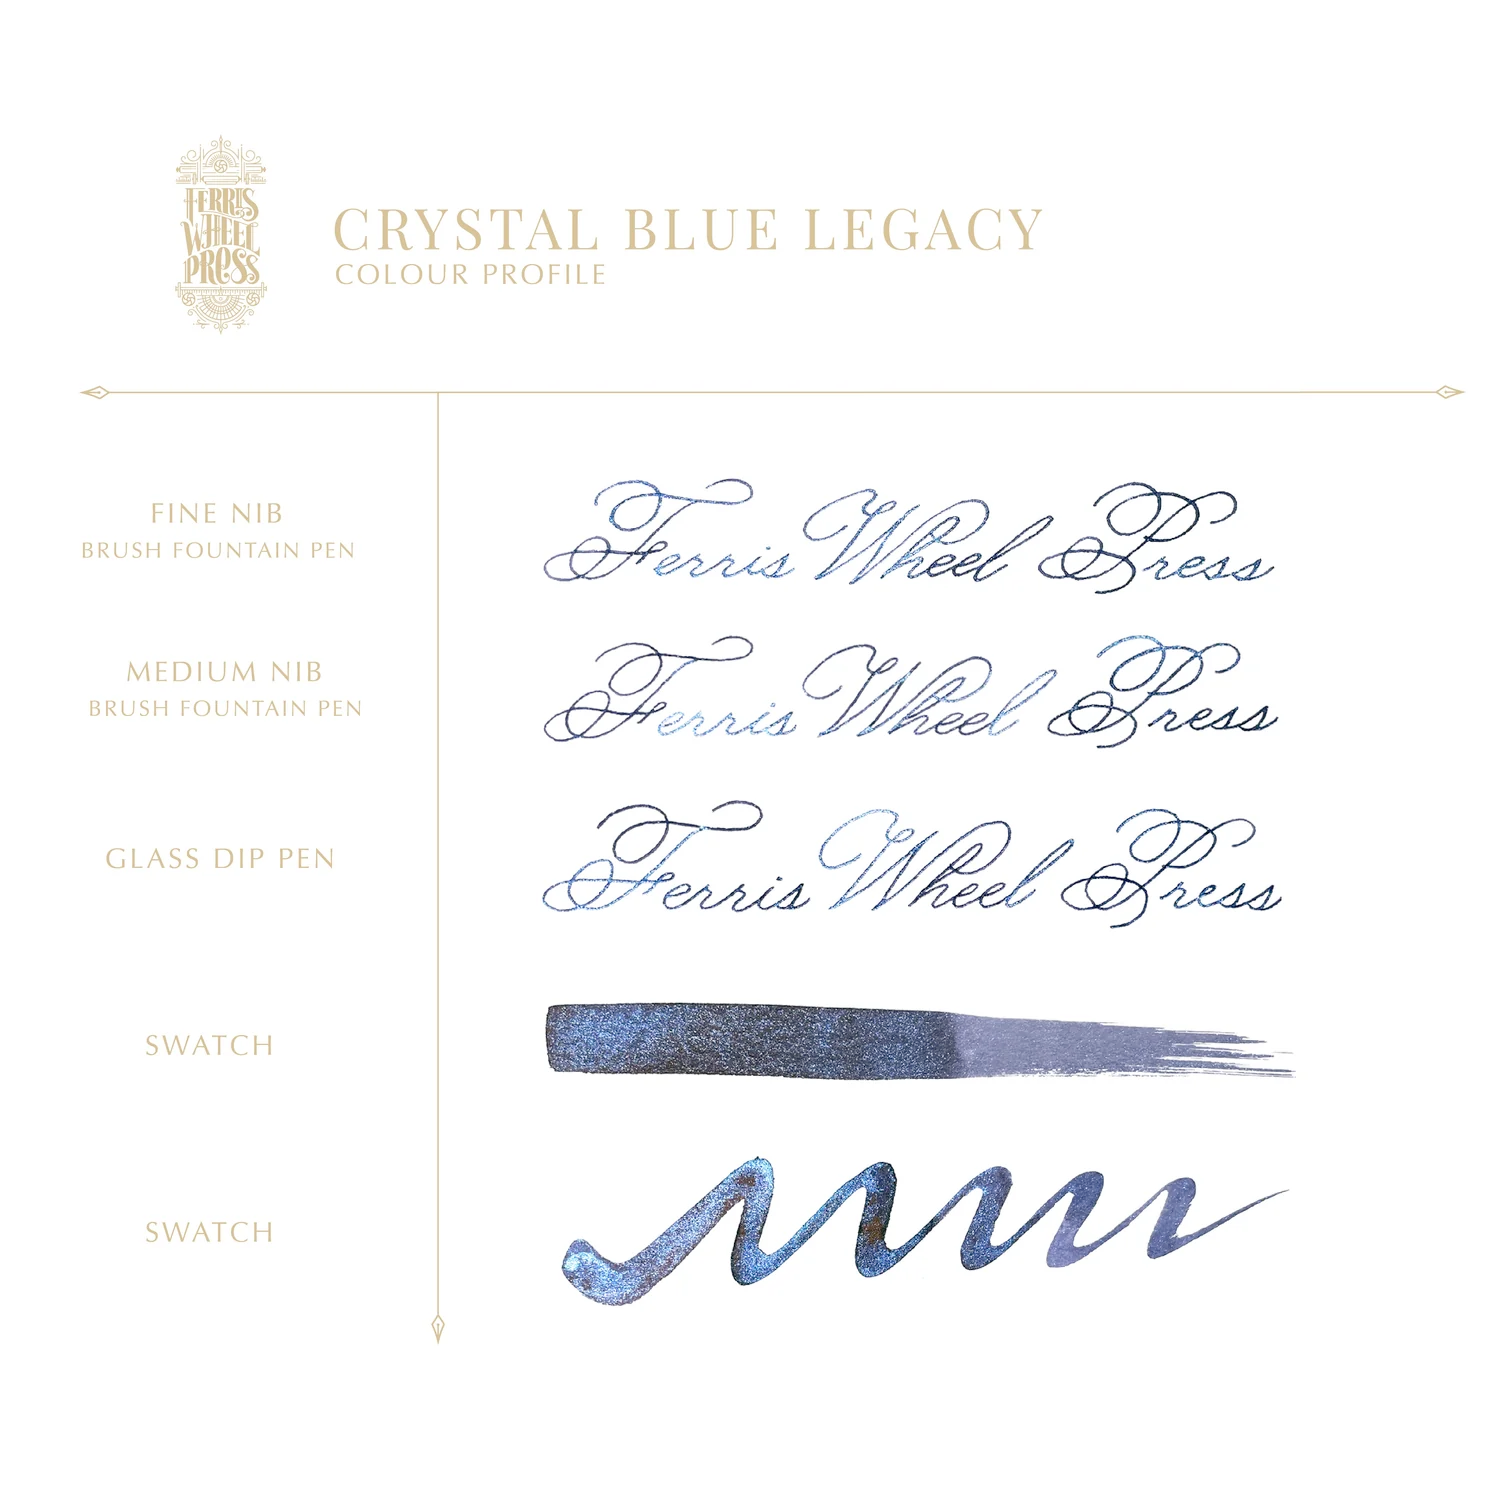 38 ml Füllfederhaltertinte – Crystal Blue Legacy